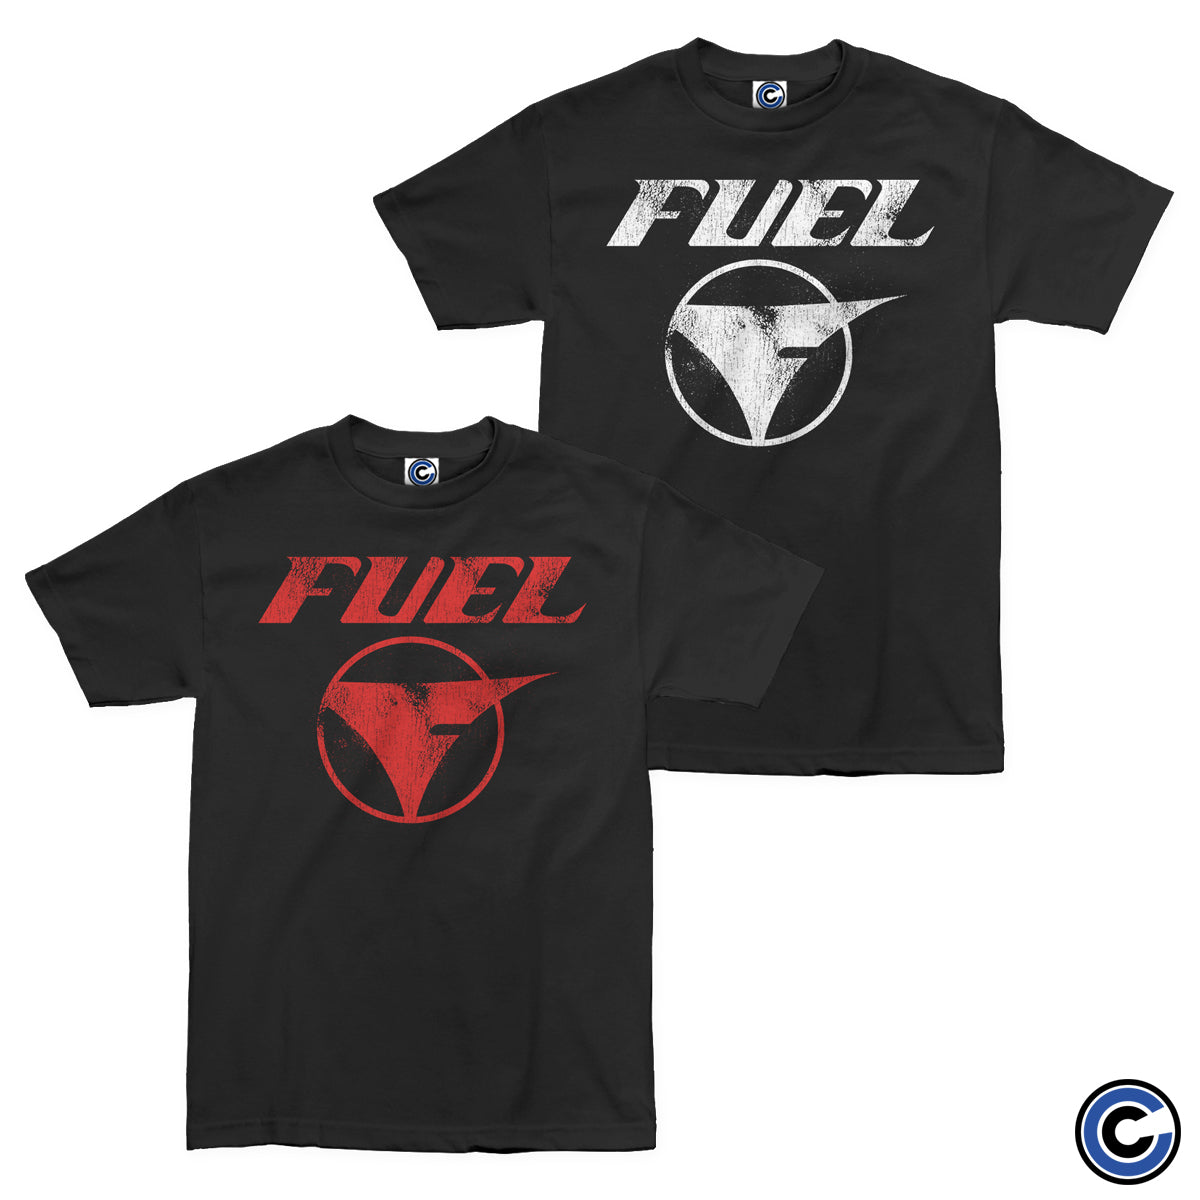 Fuel "Vintage" Shirt